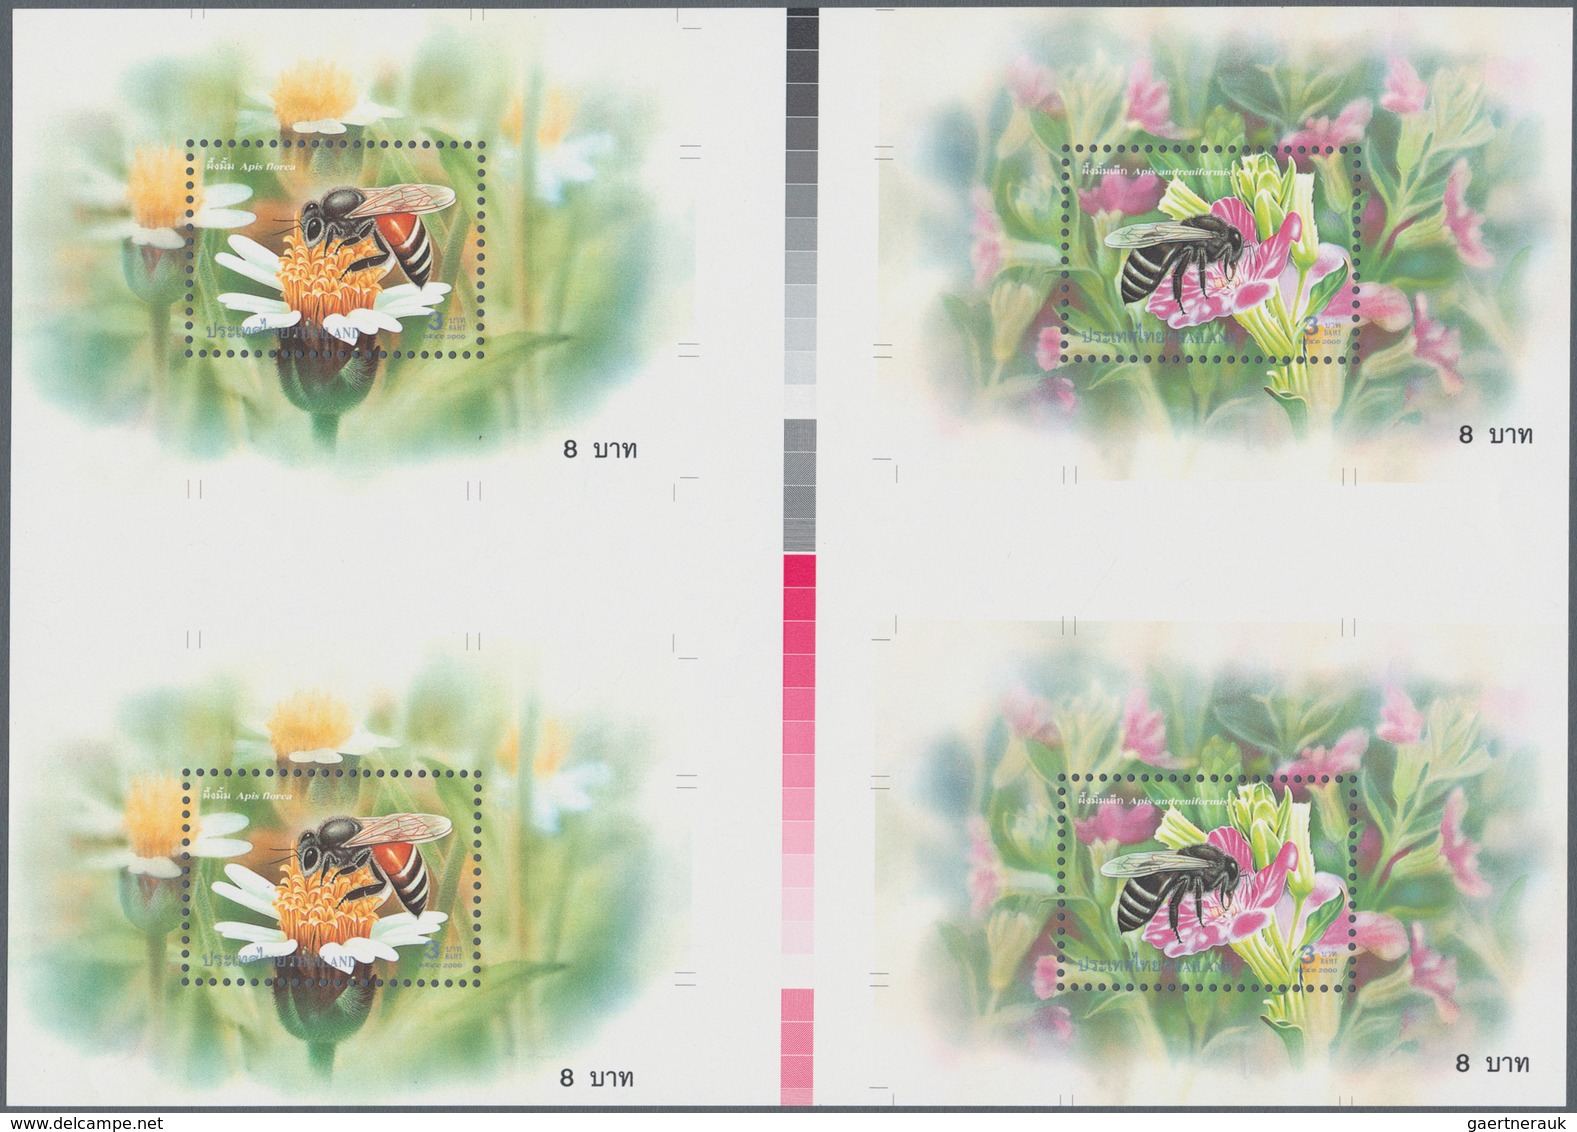 00673 Thematik: Tiere-Bienen / Animals-bees: 2000, Thailand. Set Of Two Cross Gutter Proof Blocks Of 2 Tim - Honeybees